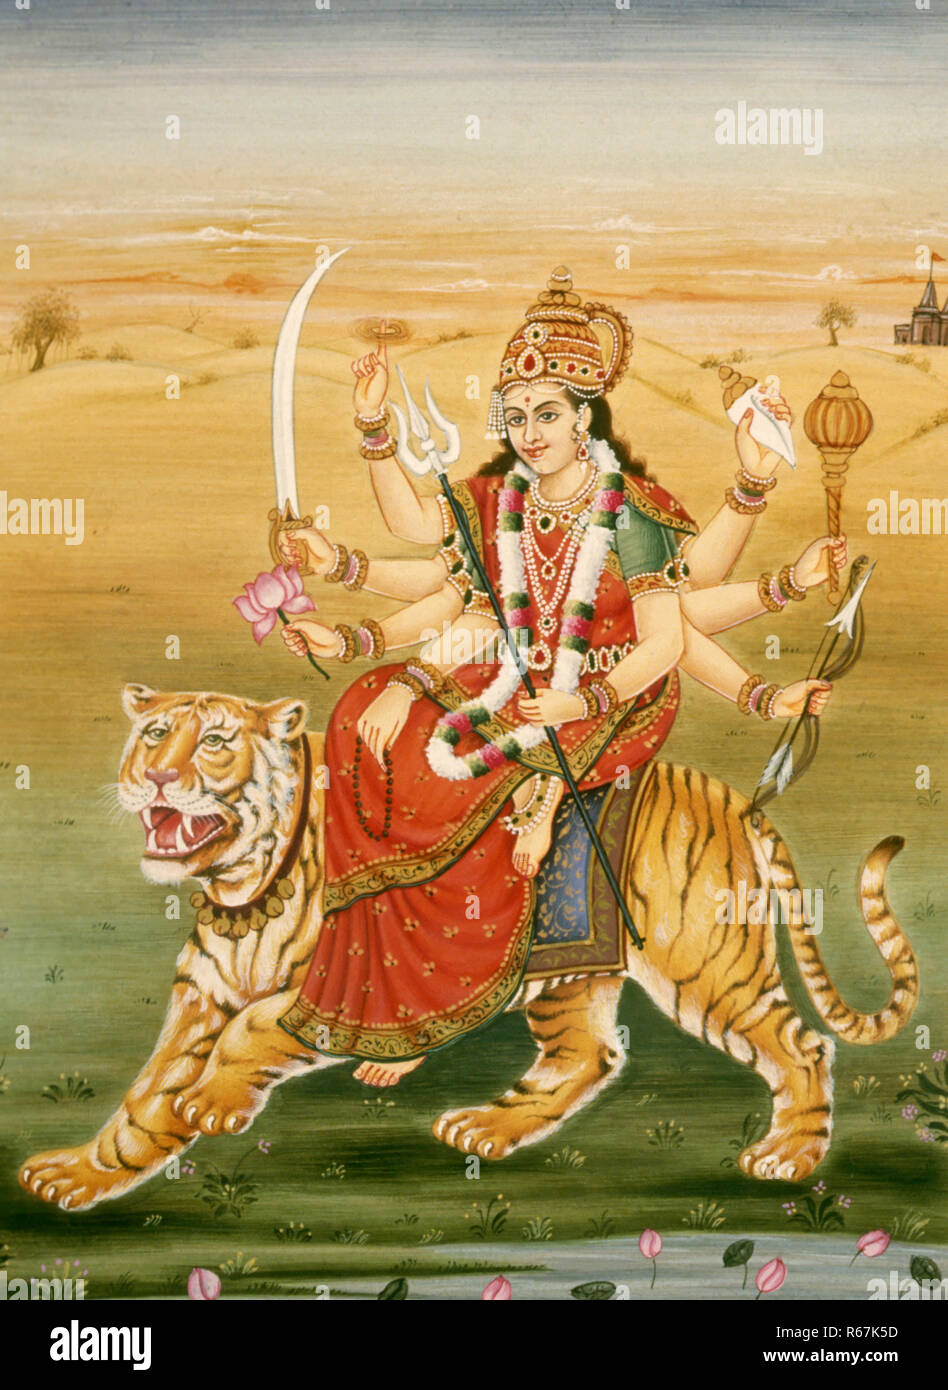 Doddess Durga seduta riding tigre otto mani che trasportano conch shell mace arco e freccia tridente preghiera perle loto fiore spada sudarshan chakra miniatura pittura India Asia Asian Indian Foto Stock